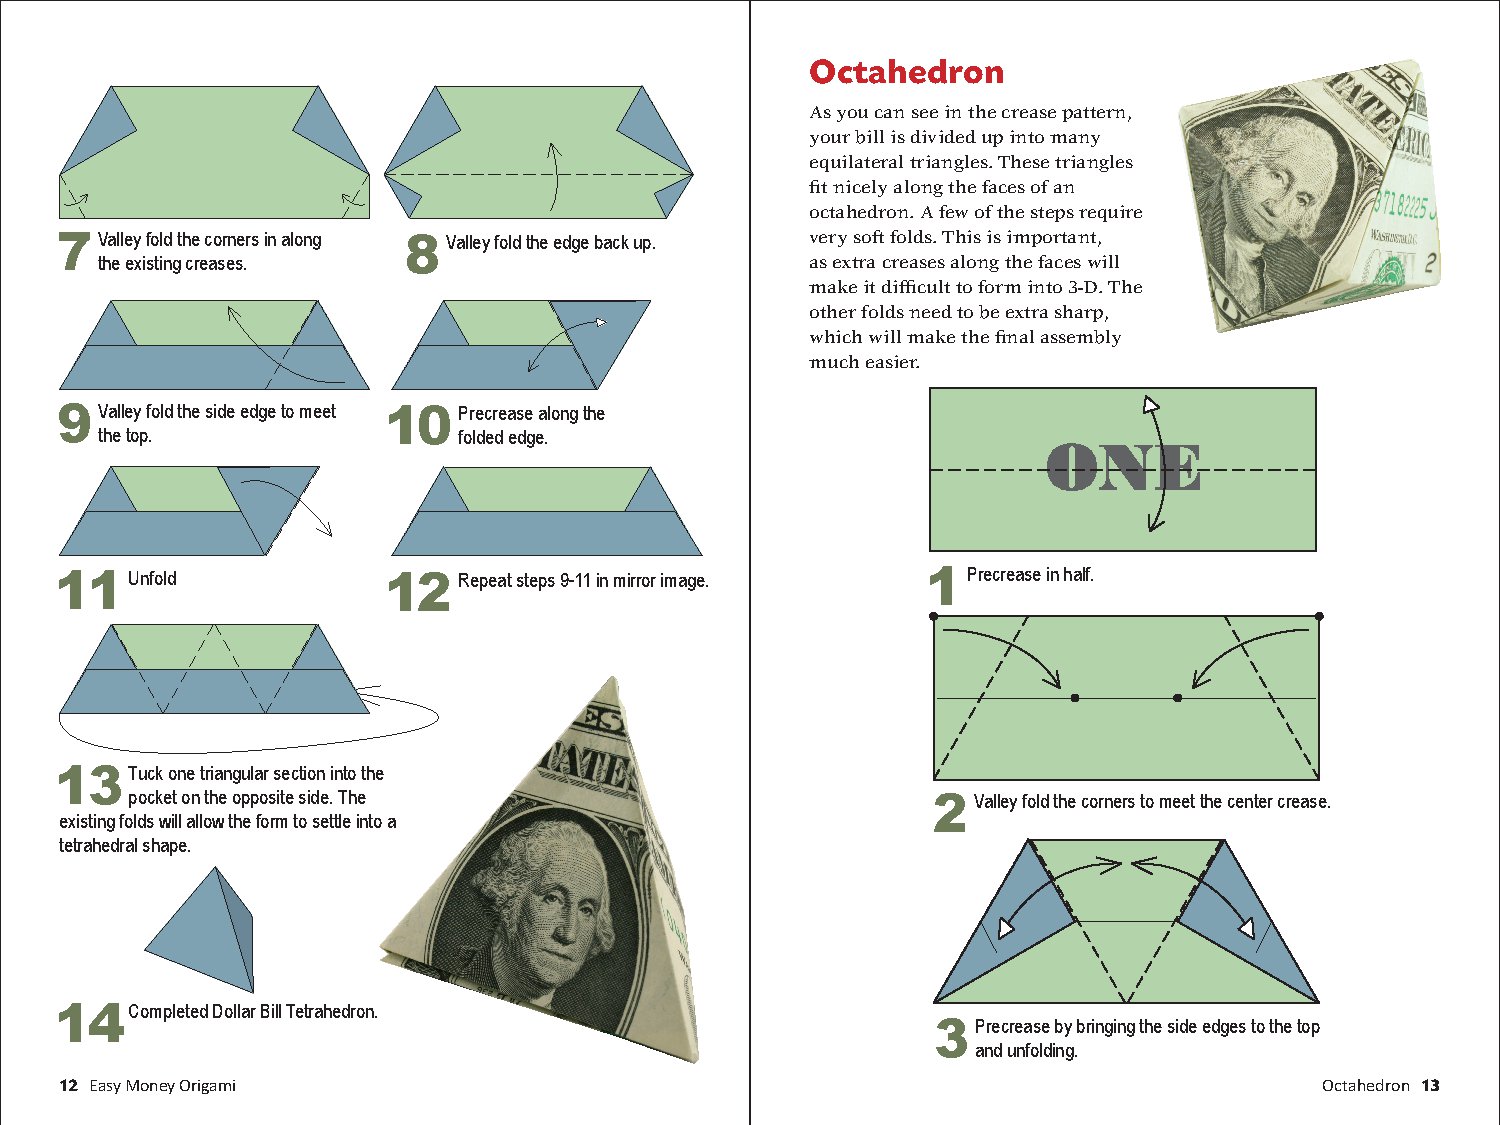 Easy Money Origami Kit